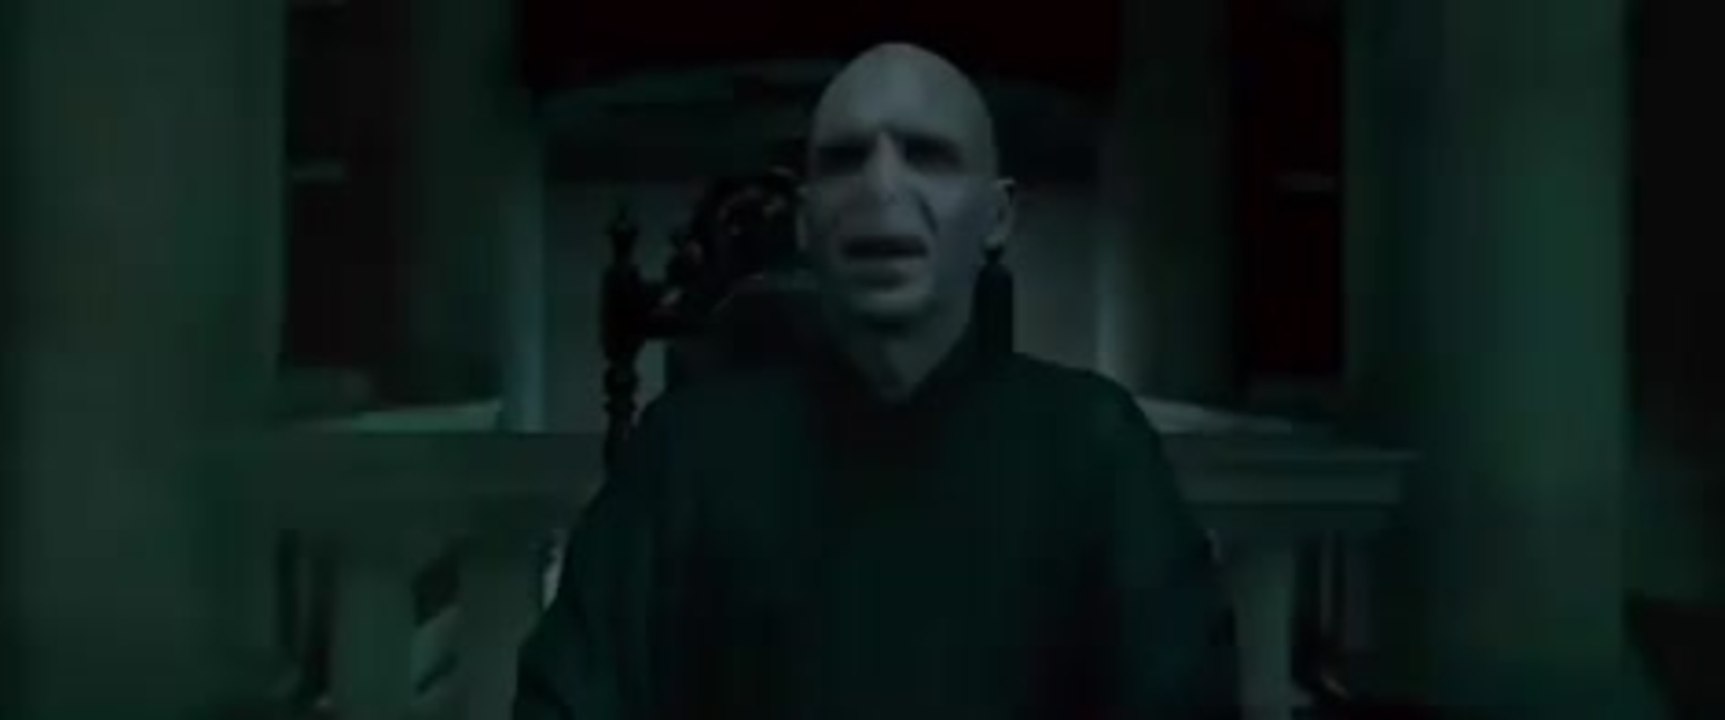 Harry Potter 7 - TV-Spot # 3